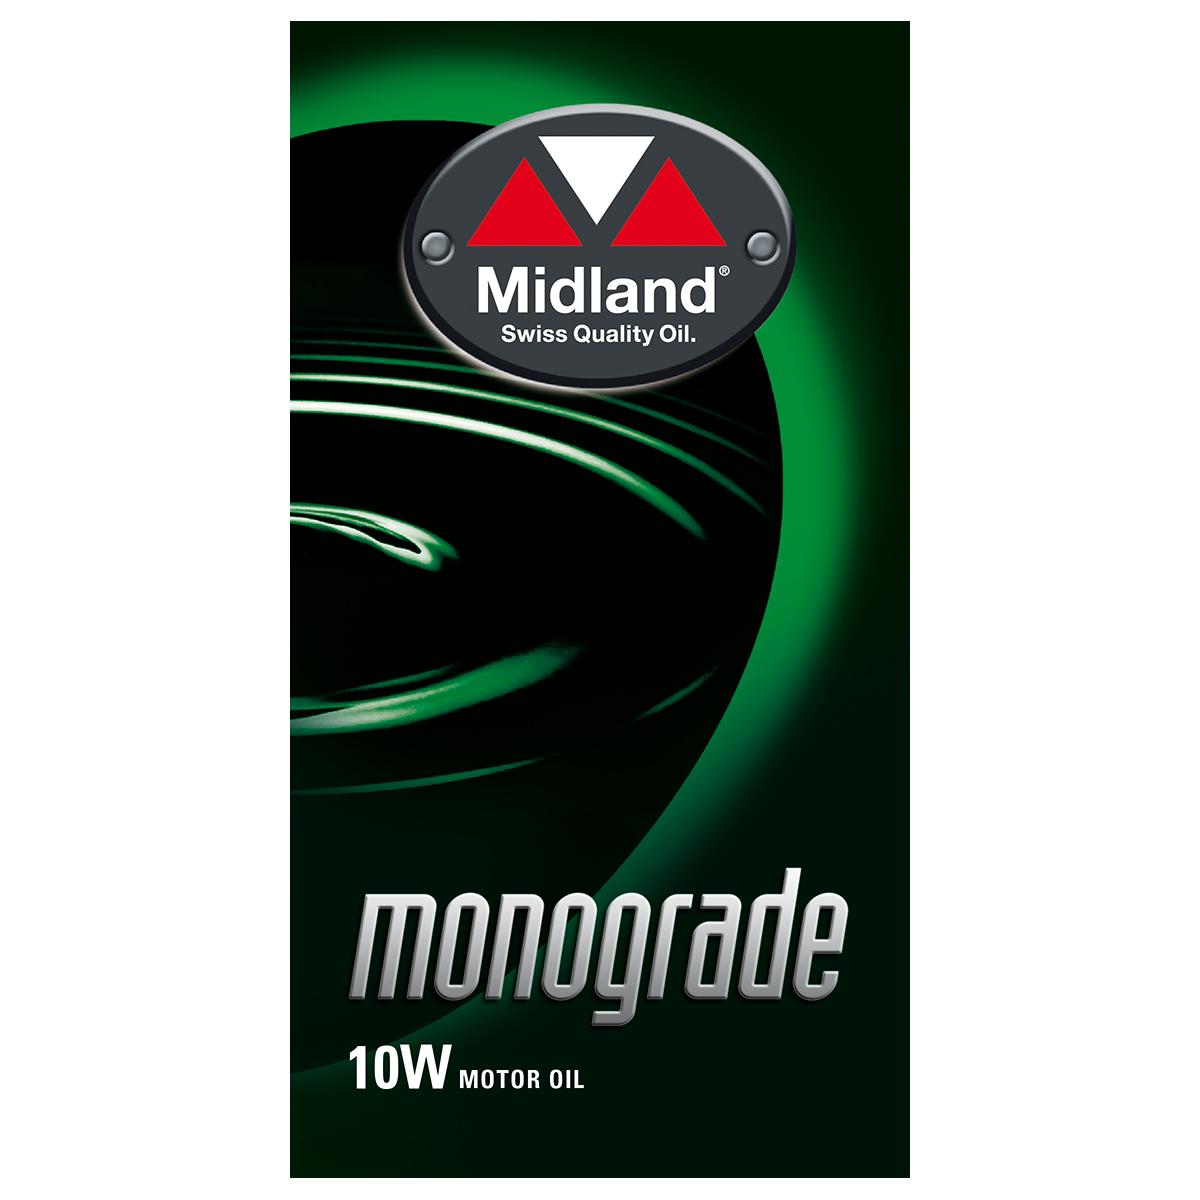 Monograde 10W